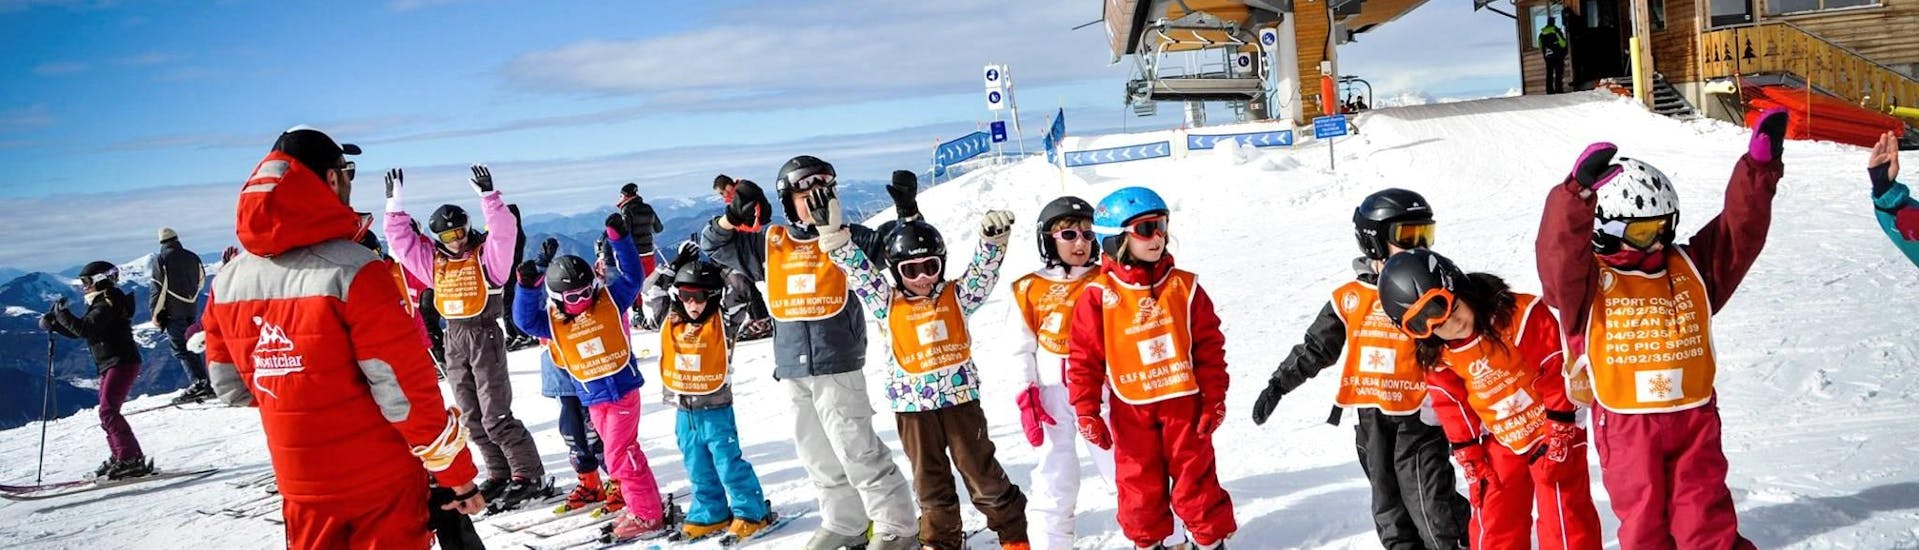 Des enfants sont heureux de prendre des cours de ski avec l'école de ski ESF Montclar.